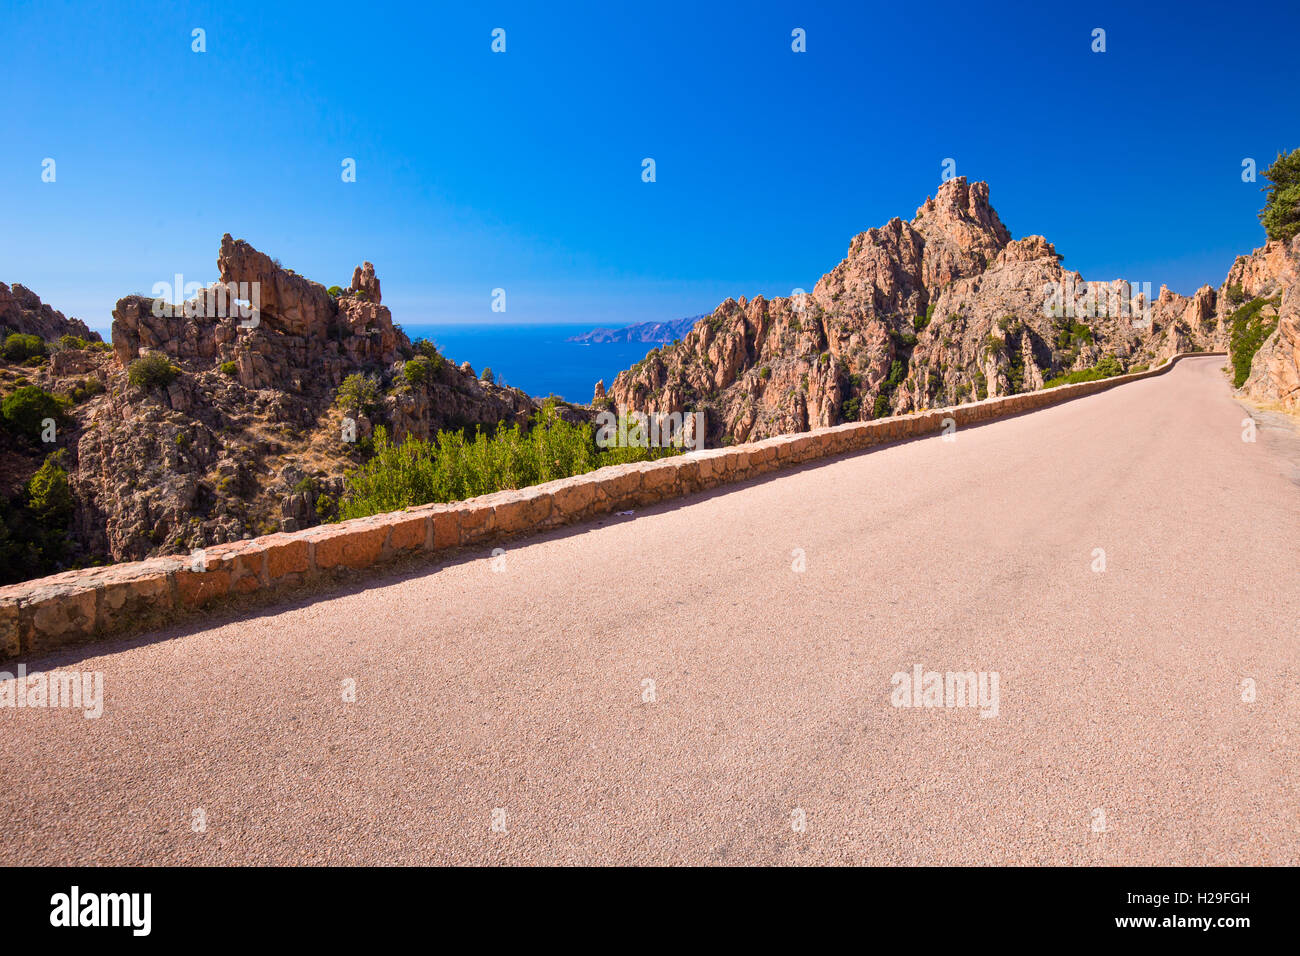 Magnifique paysage de D81 route à travers les Calanques de Piana sur la côte ouest de la Corse, France, Europe. Banque D'Images